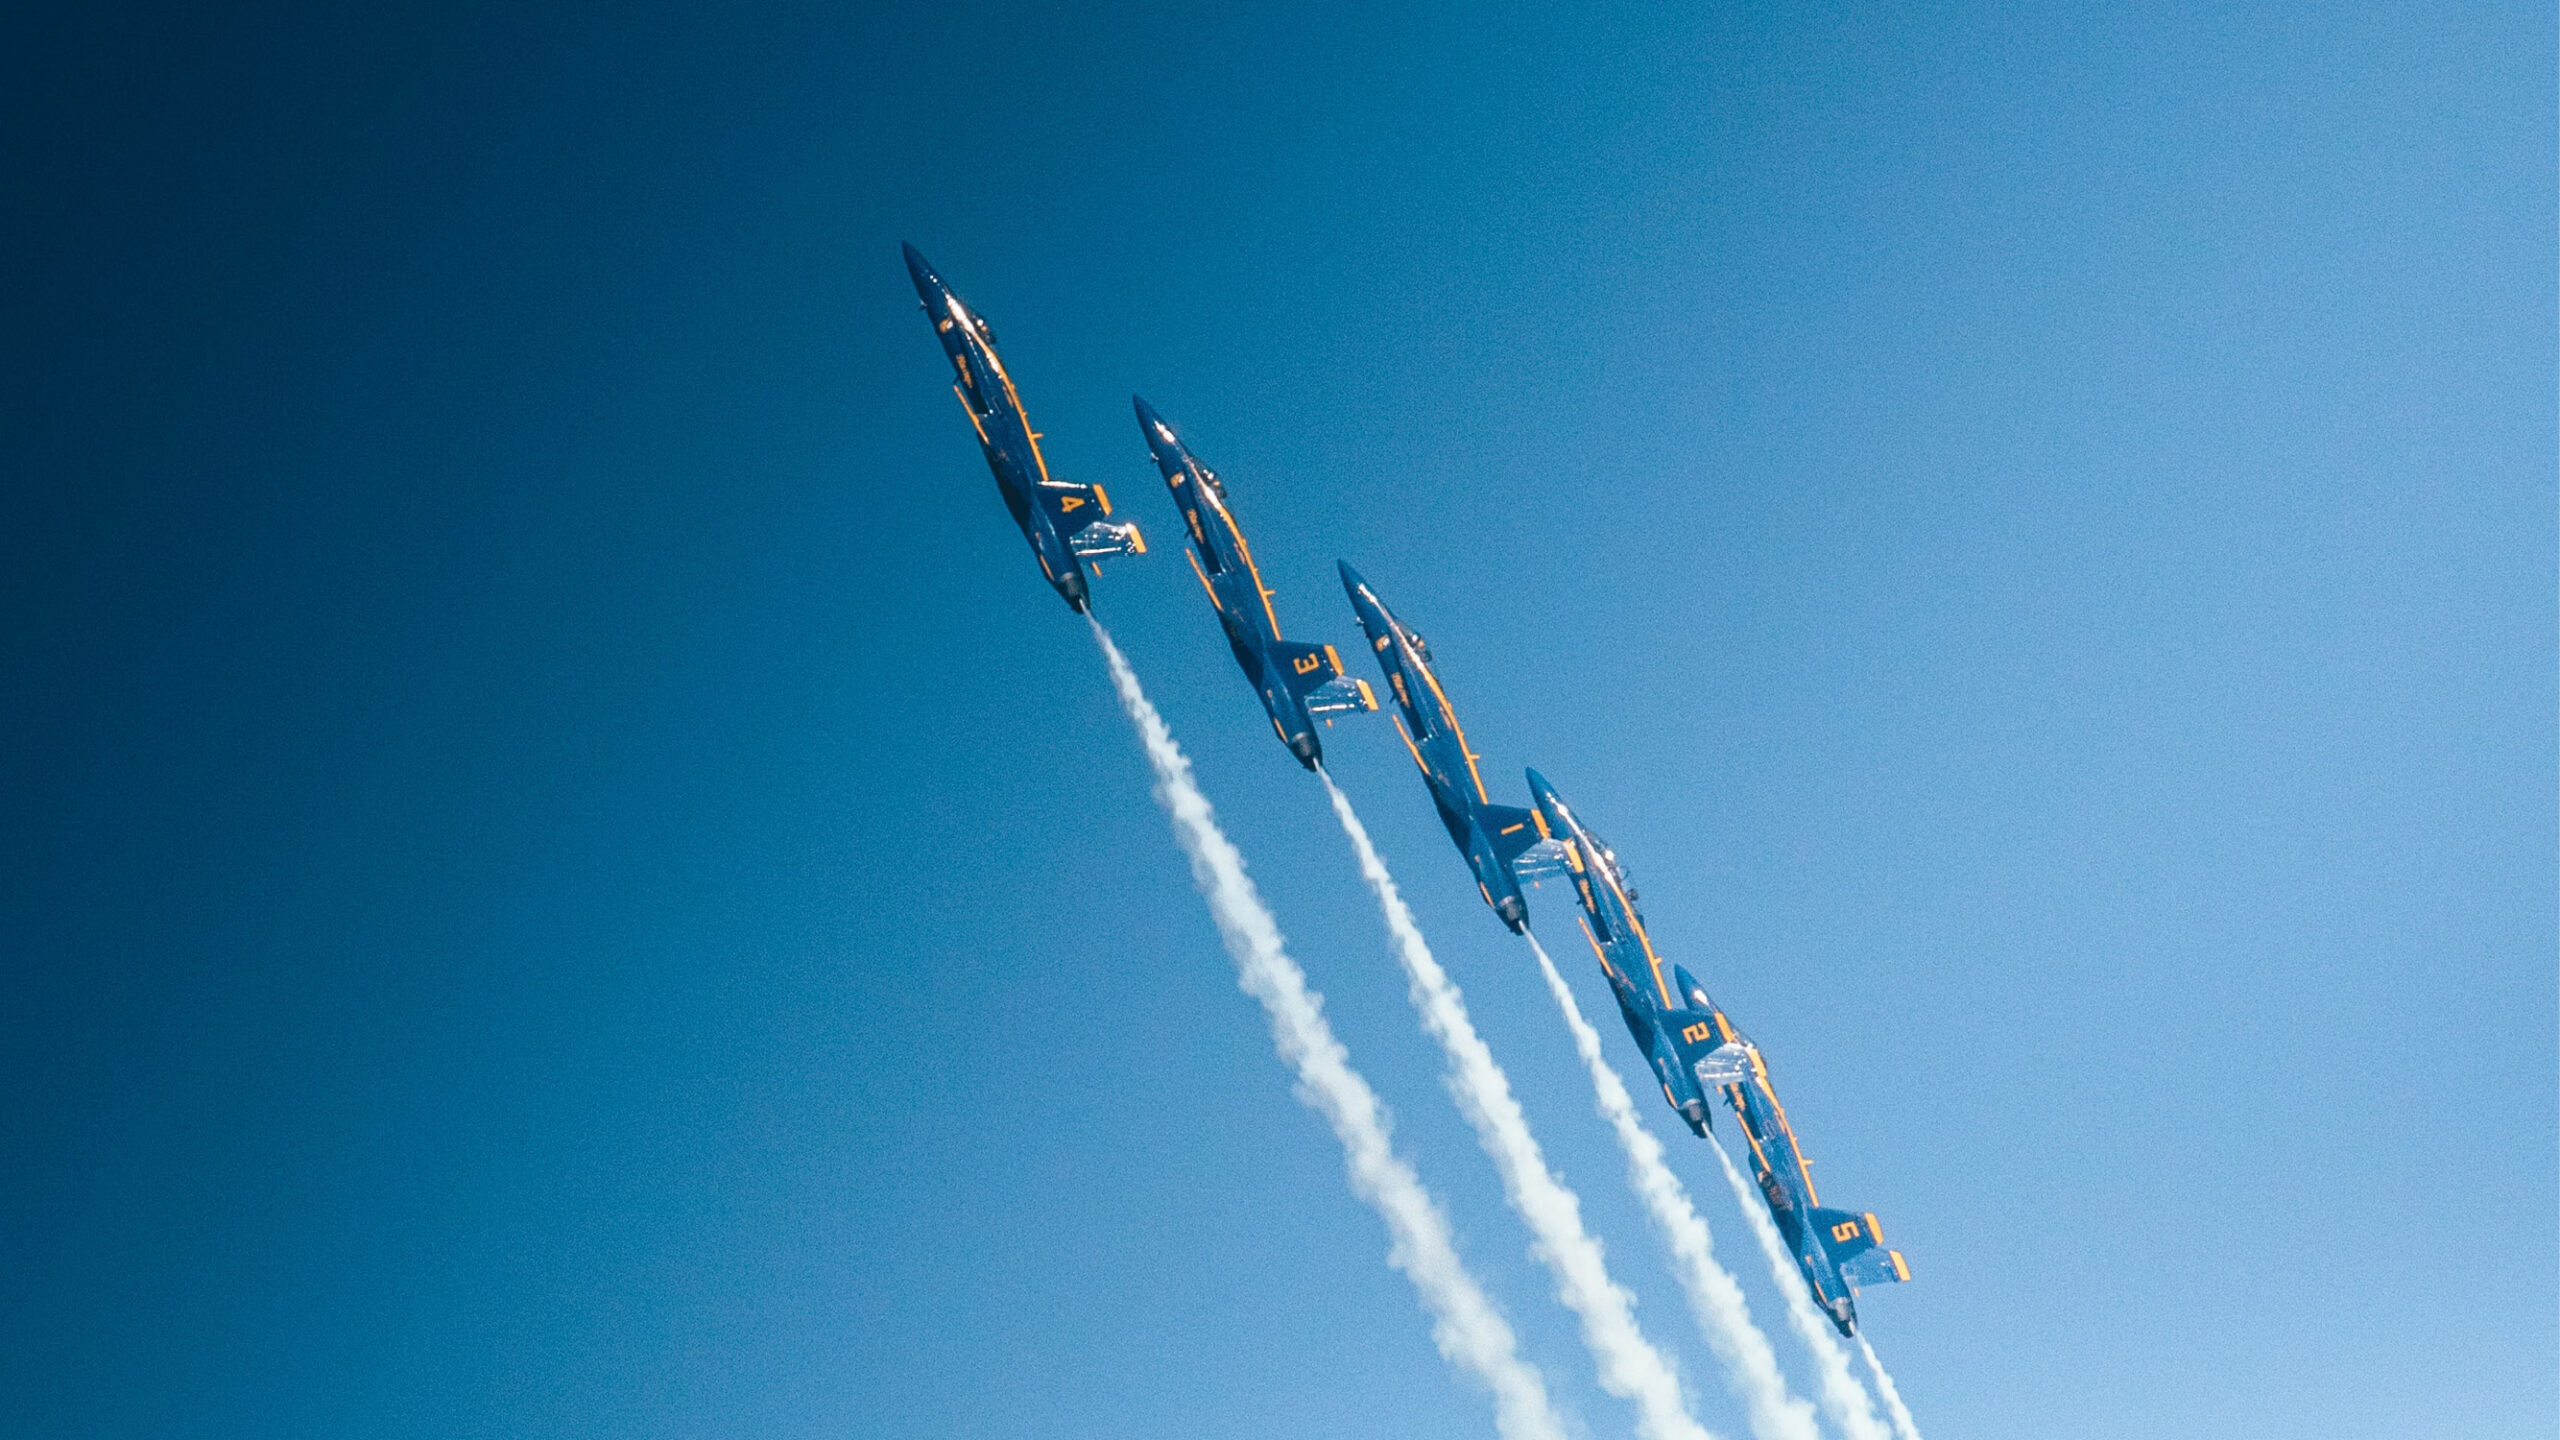 jets soaring at air show